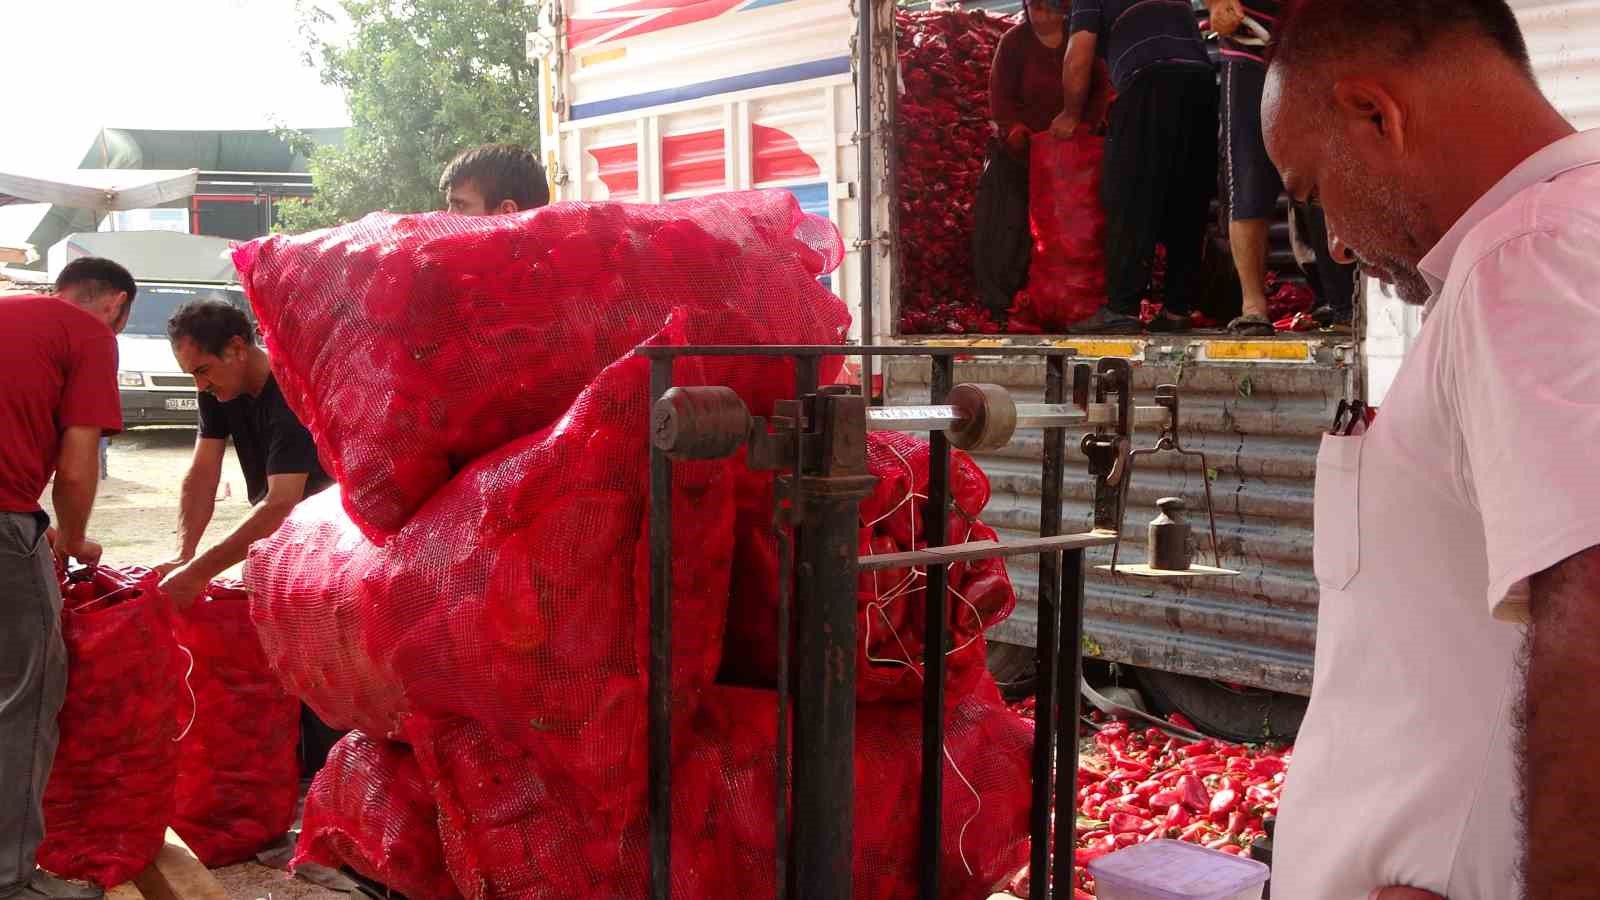 Adana'da geçen yıl 12 liradan satılan salçalık biber bu yıl 22 liradan satışa çıktı